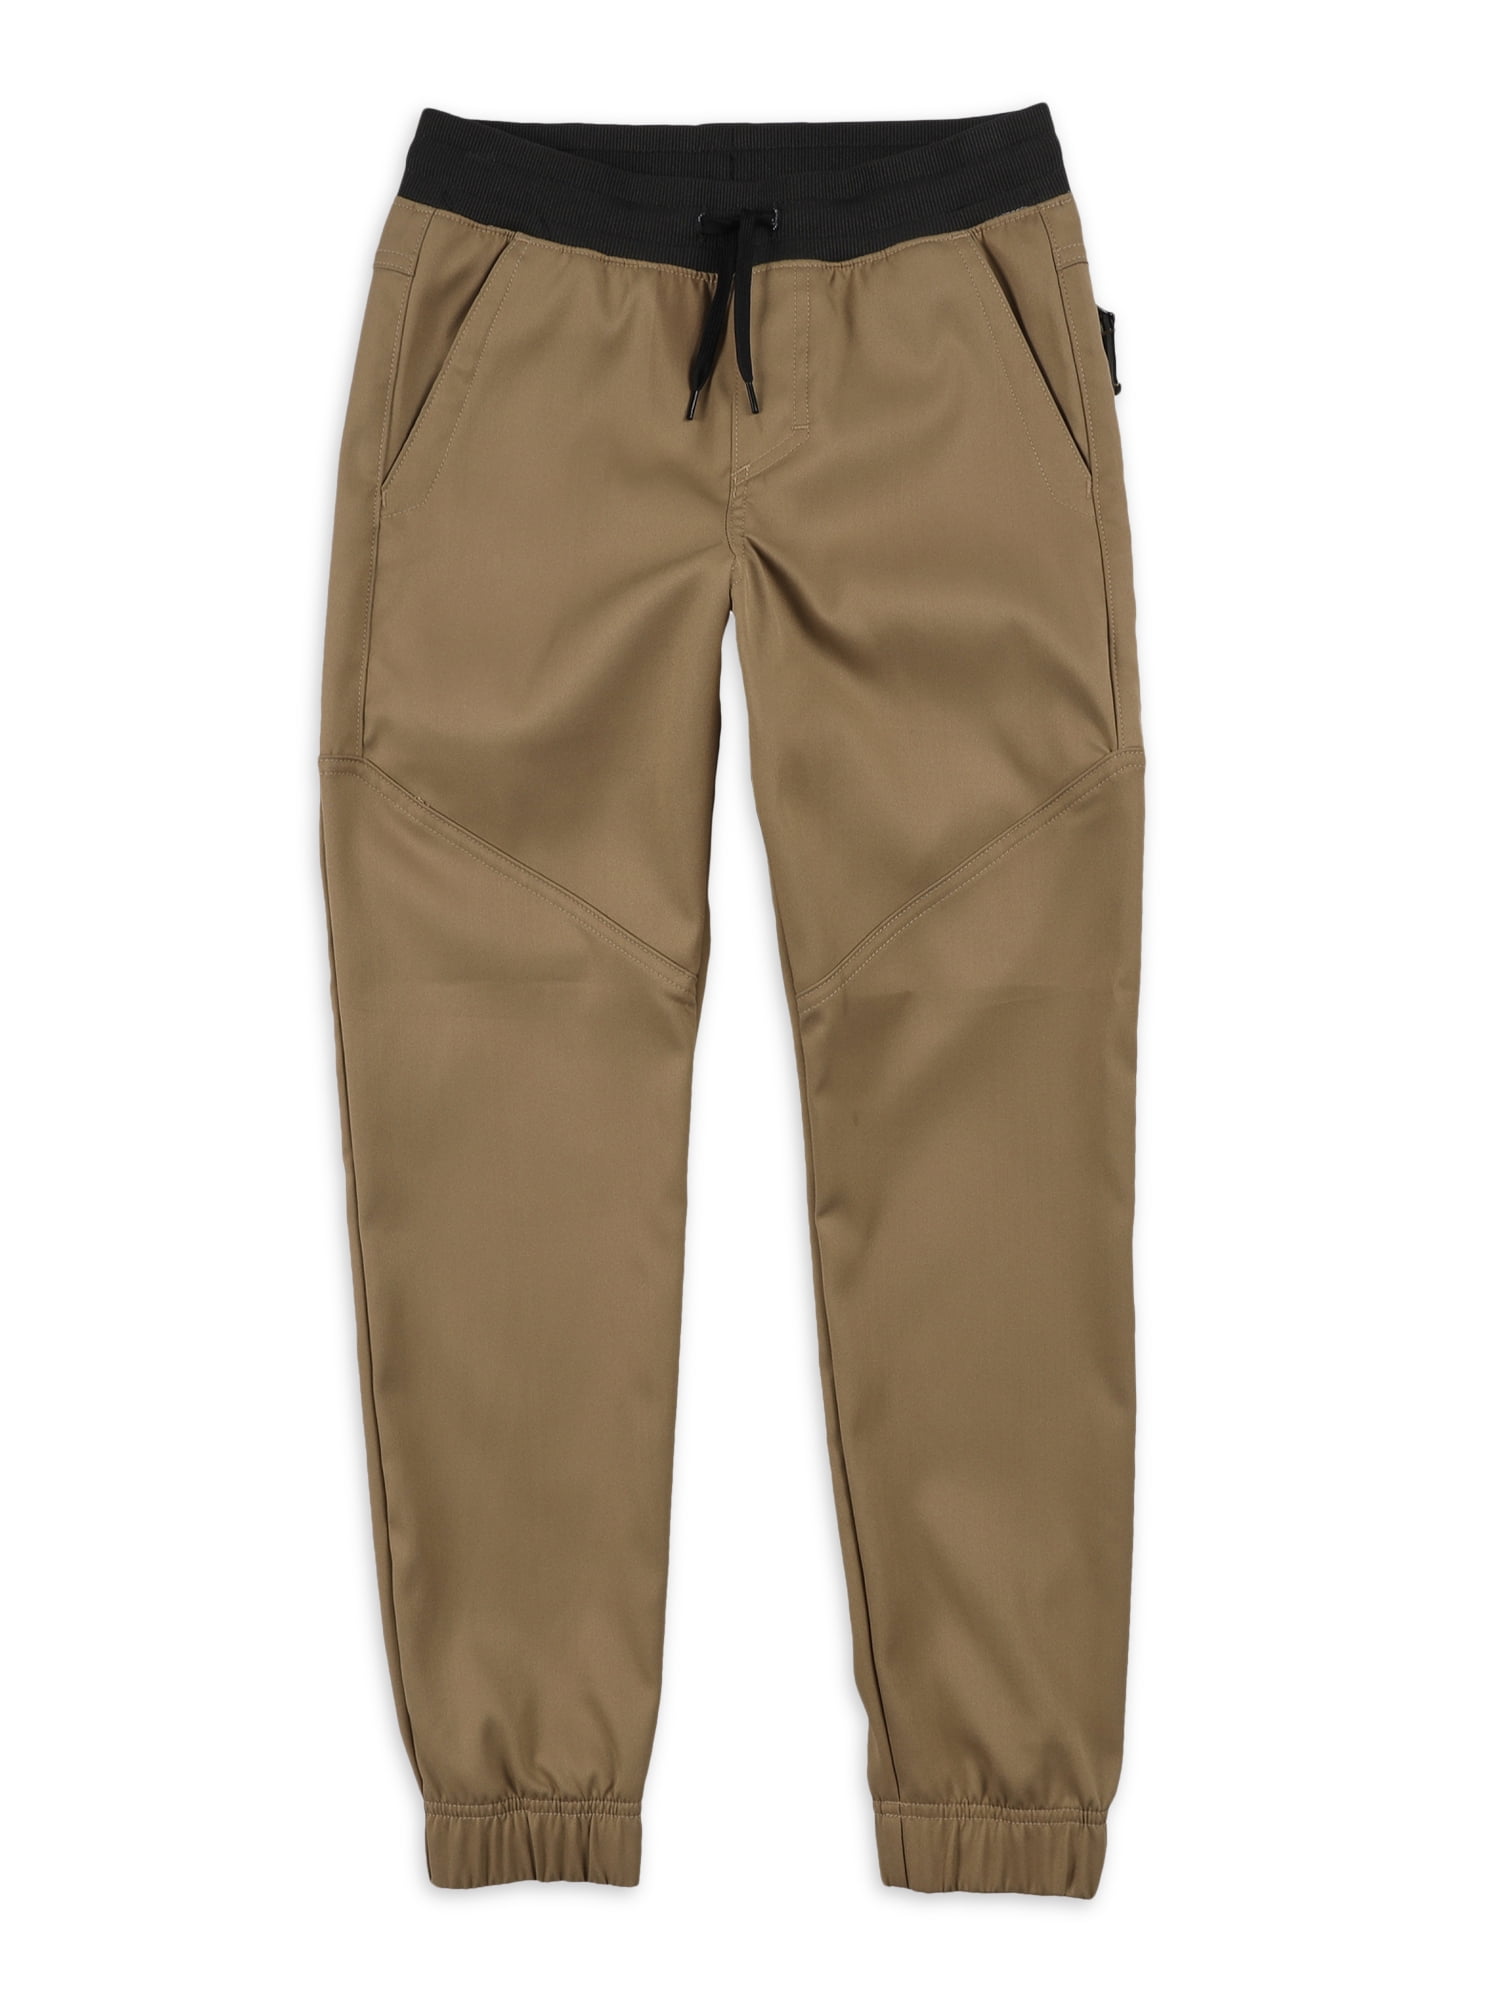 Womens Wrangler Lot 3 Workwear Khaki Cargo Pants NWT Sz 20X34 W42  L335  eBay